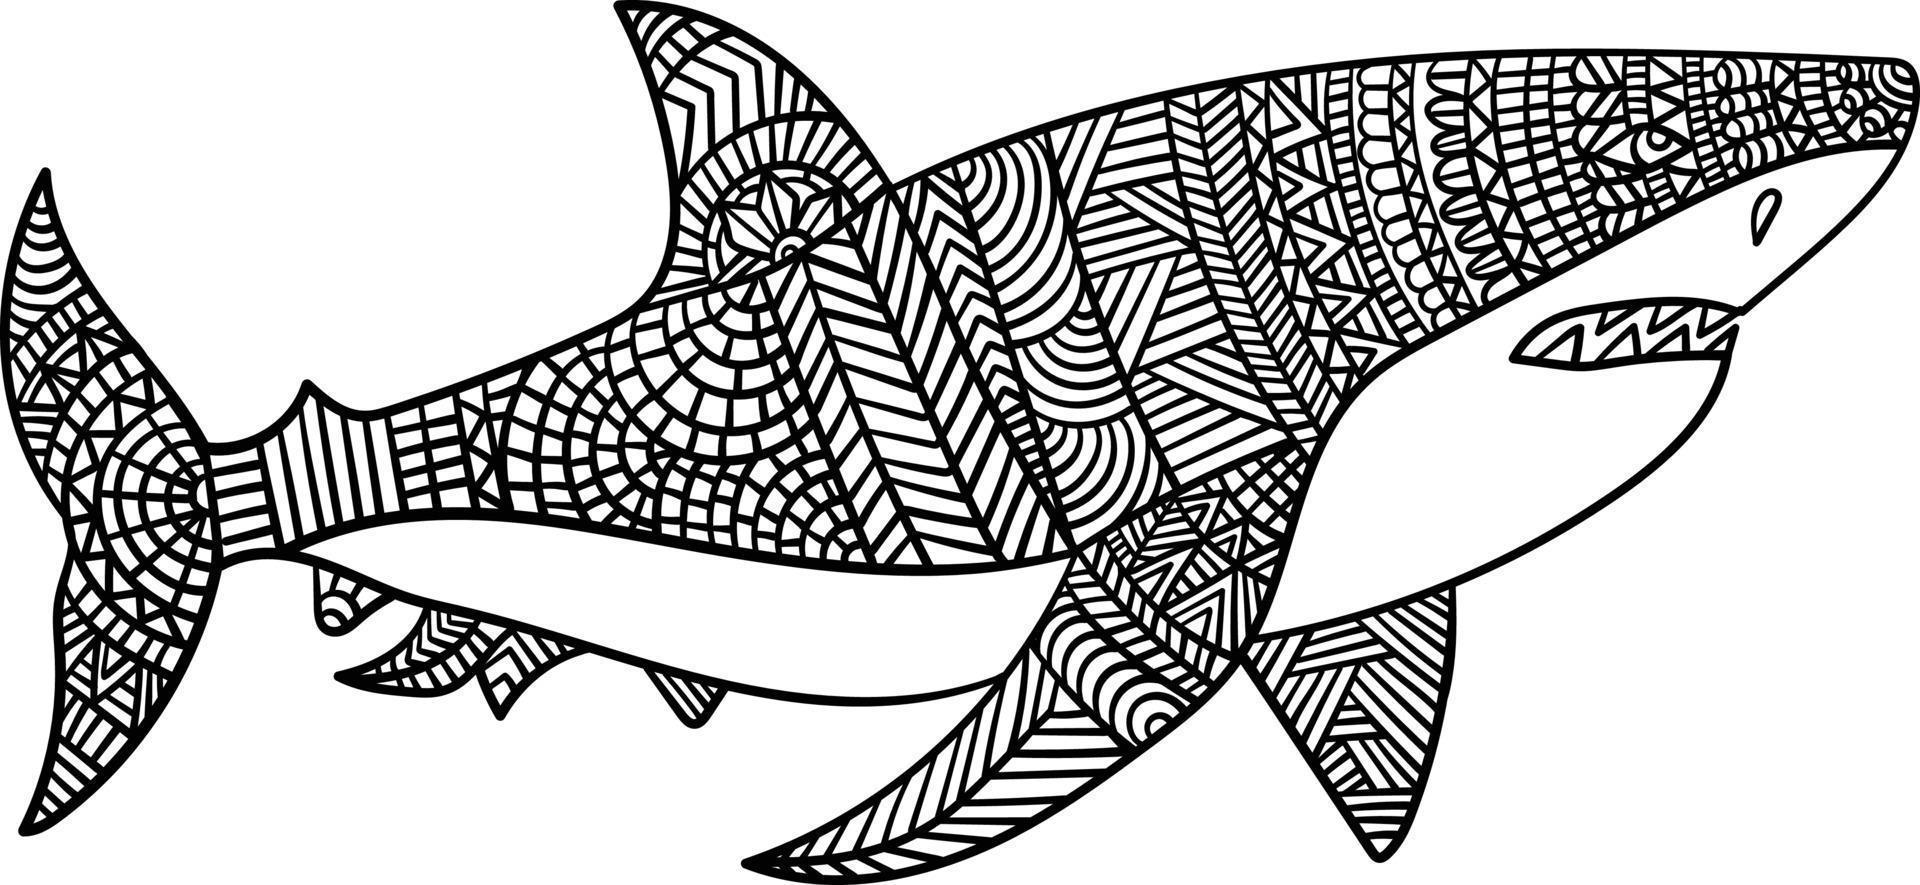 grande mandala de tubarão branco para colorir para adultos vetor